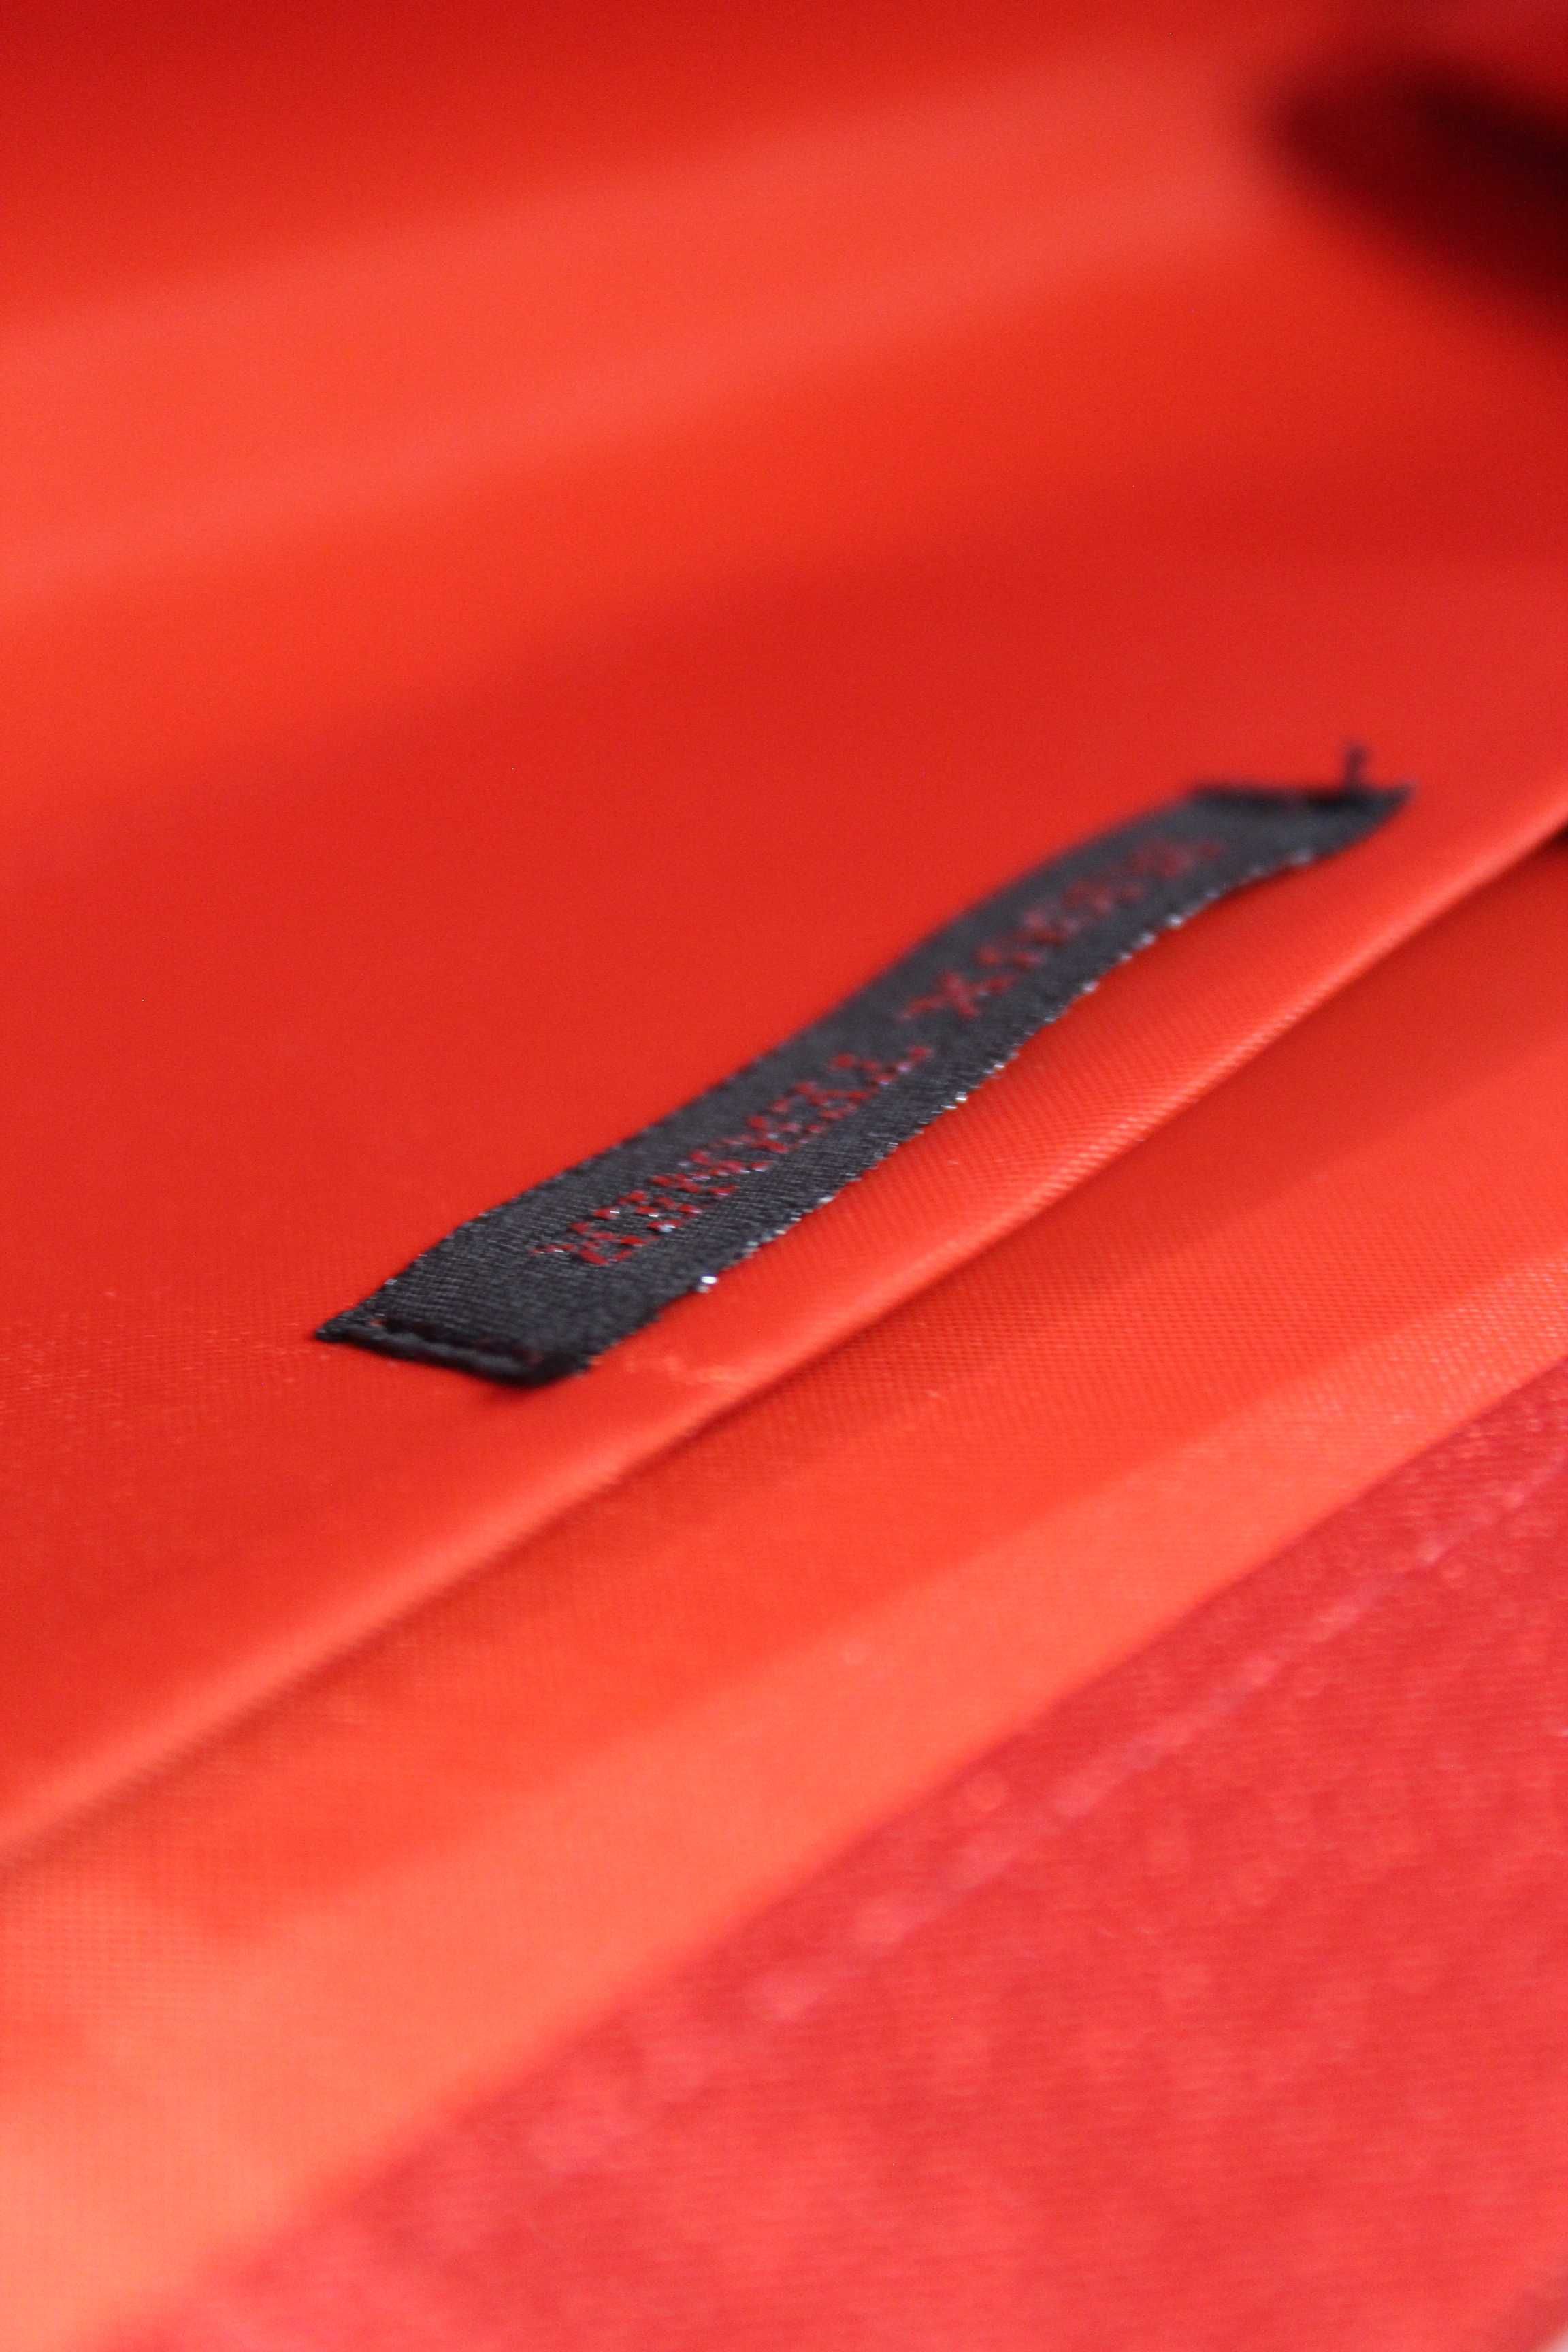 Червона атласна сумочка-клатч від відомого бренду Bijoux Terner